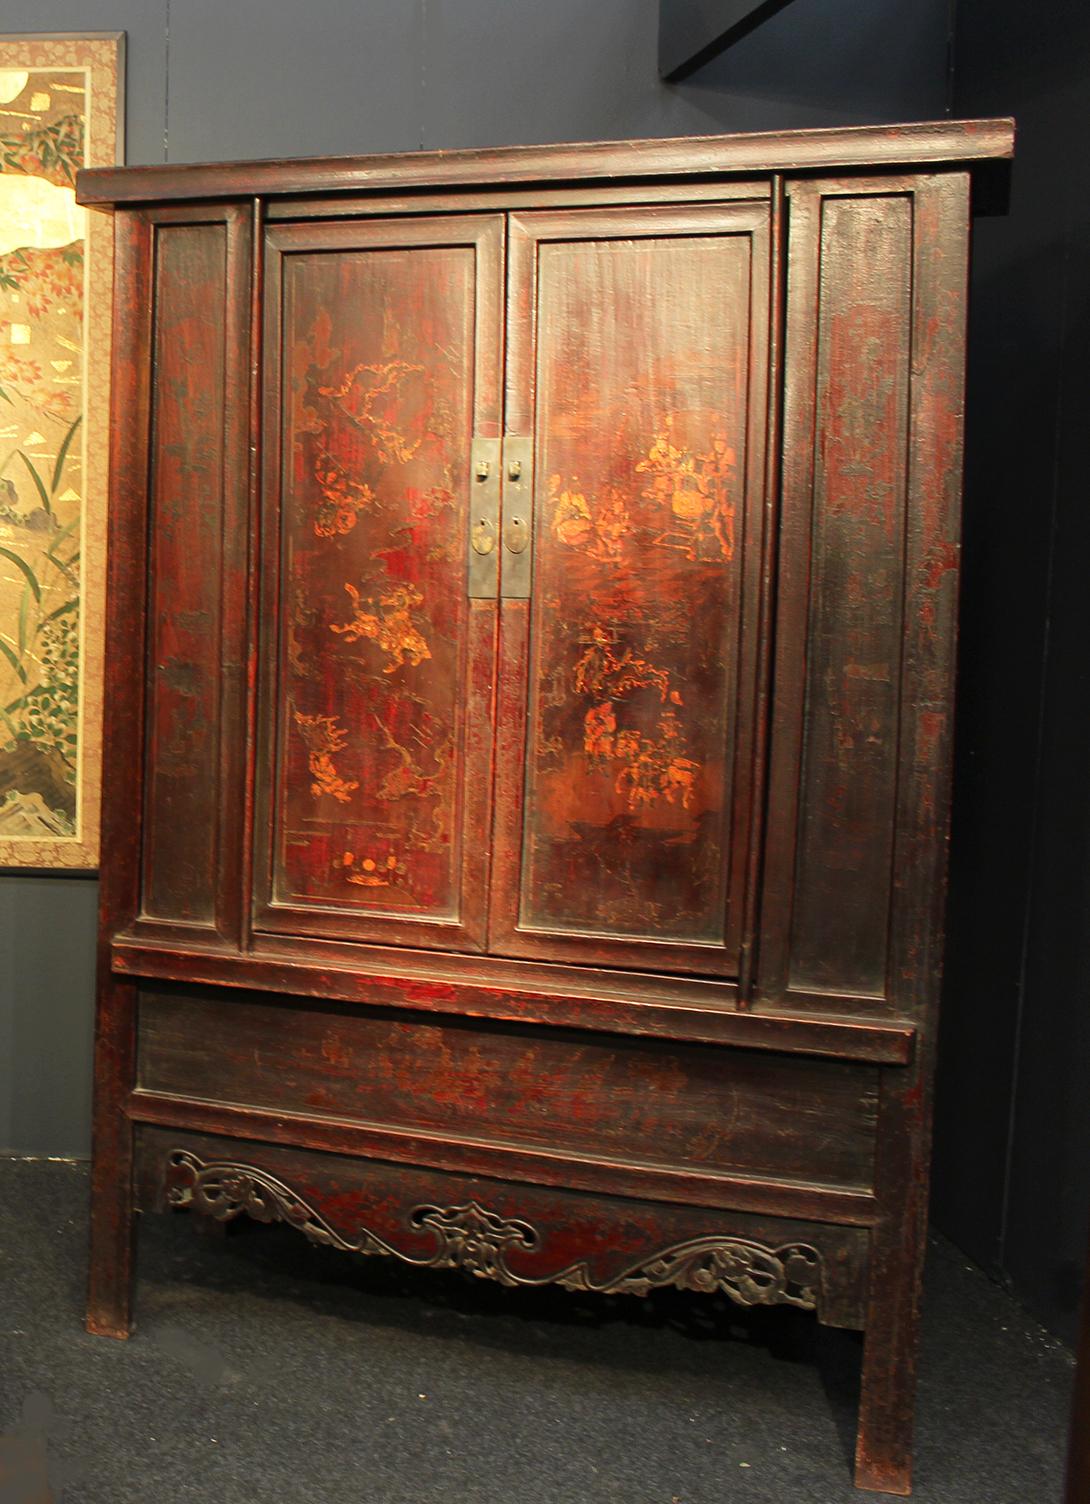 Una bella e rara coppia di mobili libreria della dinastia Qing del XVIII secolo, in pregiato legno di olmo cinese.
Ogni robusto mobile ha un'originale laccatura spessa e una forma leggermente trapezoidale.
La silhouette mostra un bellissimo fronte